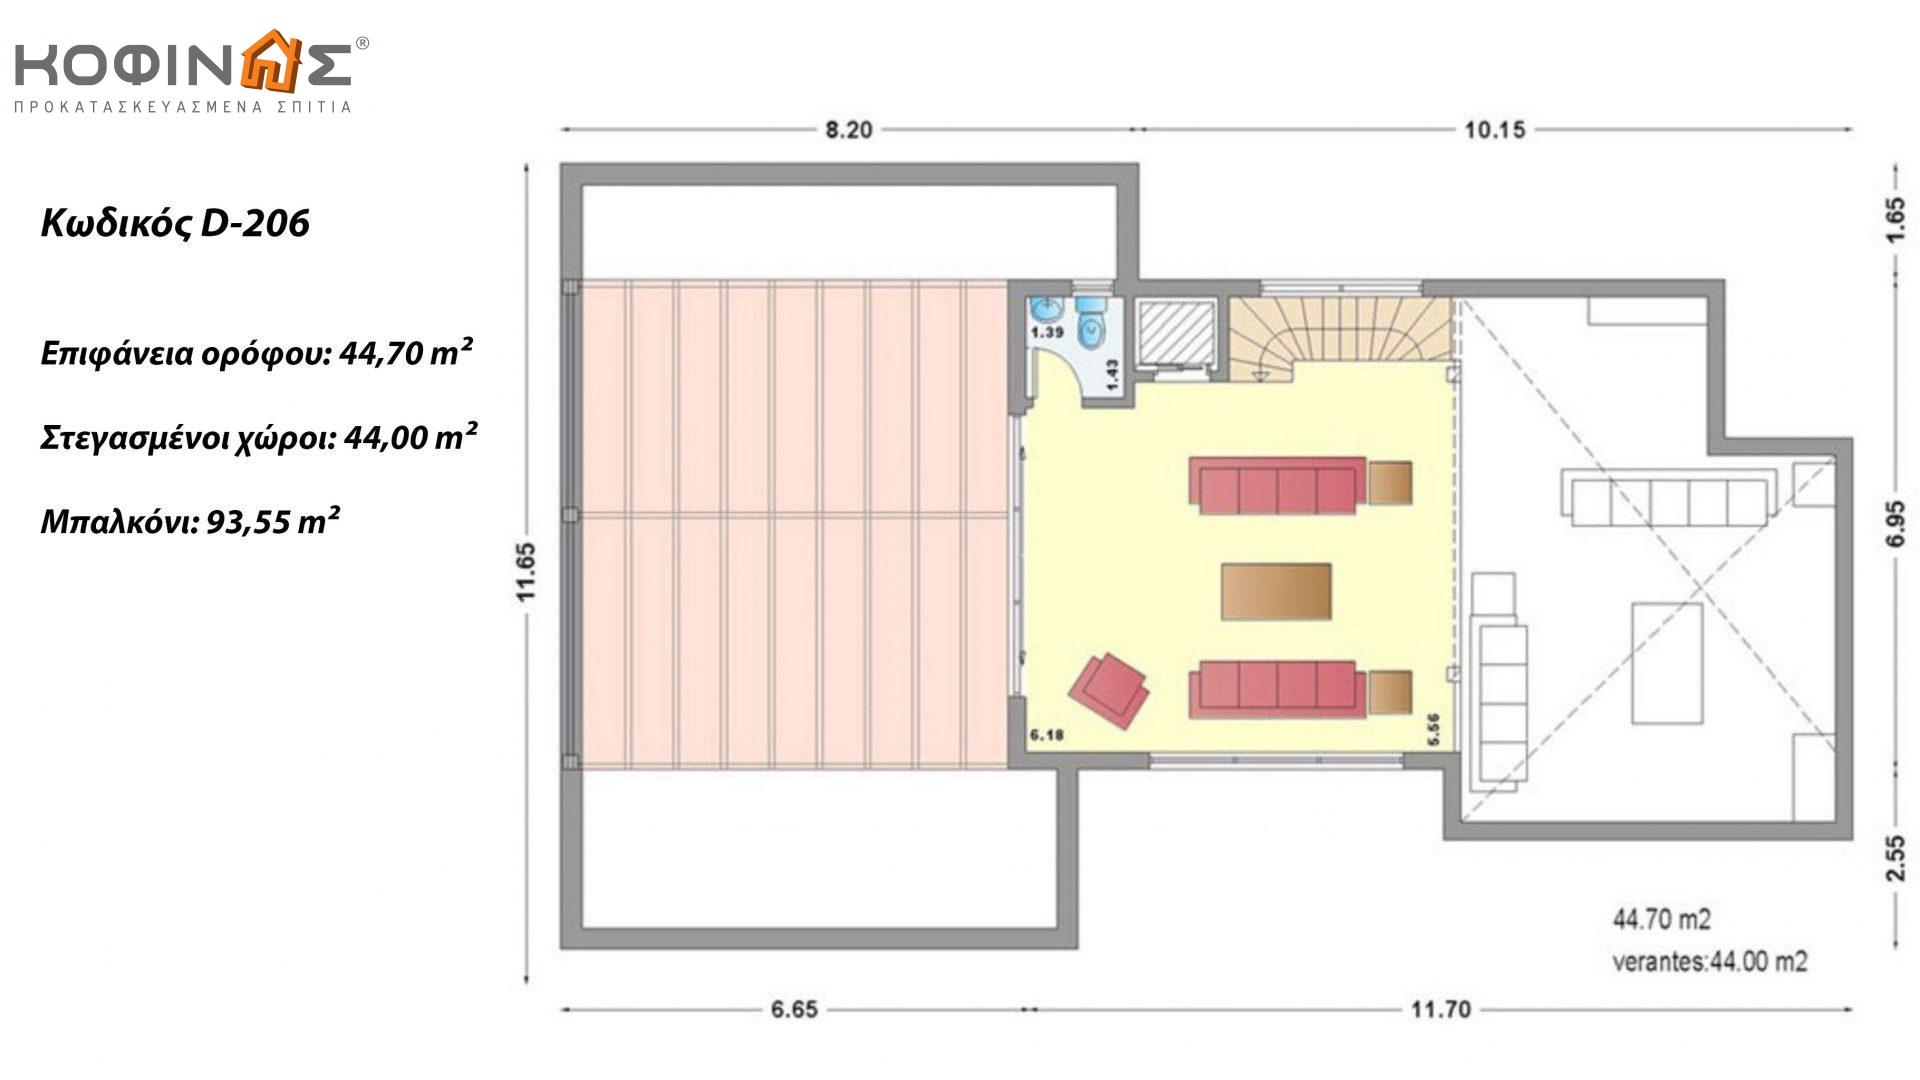 Διώροφη Κατοικία D-206, συνολικής επιφάνειας 206,30 τ.μ., συνολική επιφάνεια στεγασμένων χώρων 58.91 τ.μ., μπαλκόνια 93.55 τ.μ.